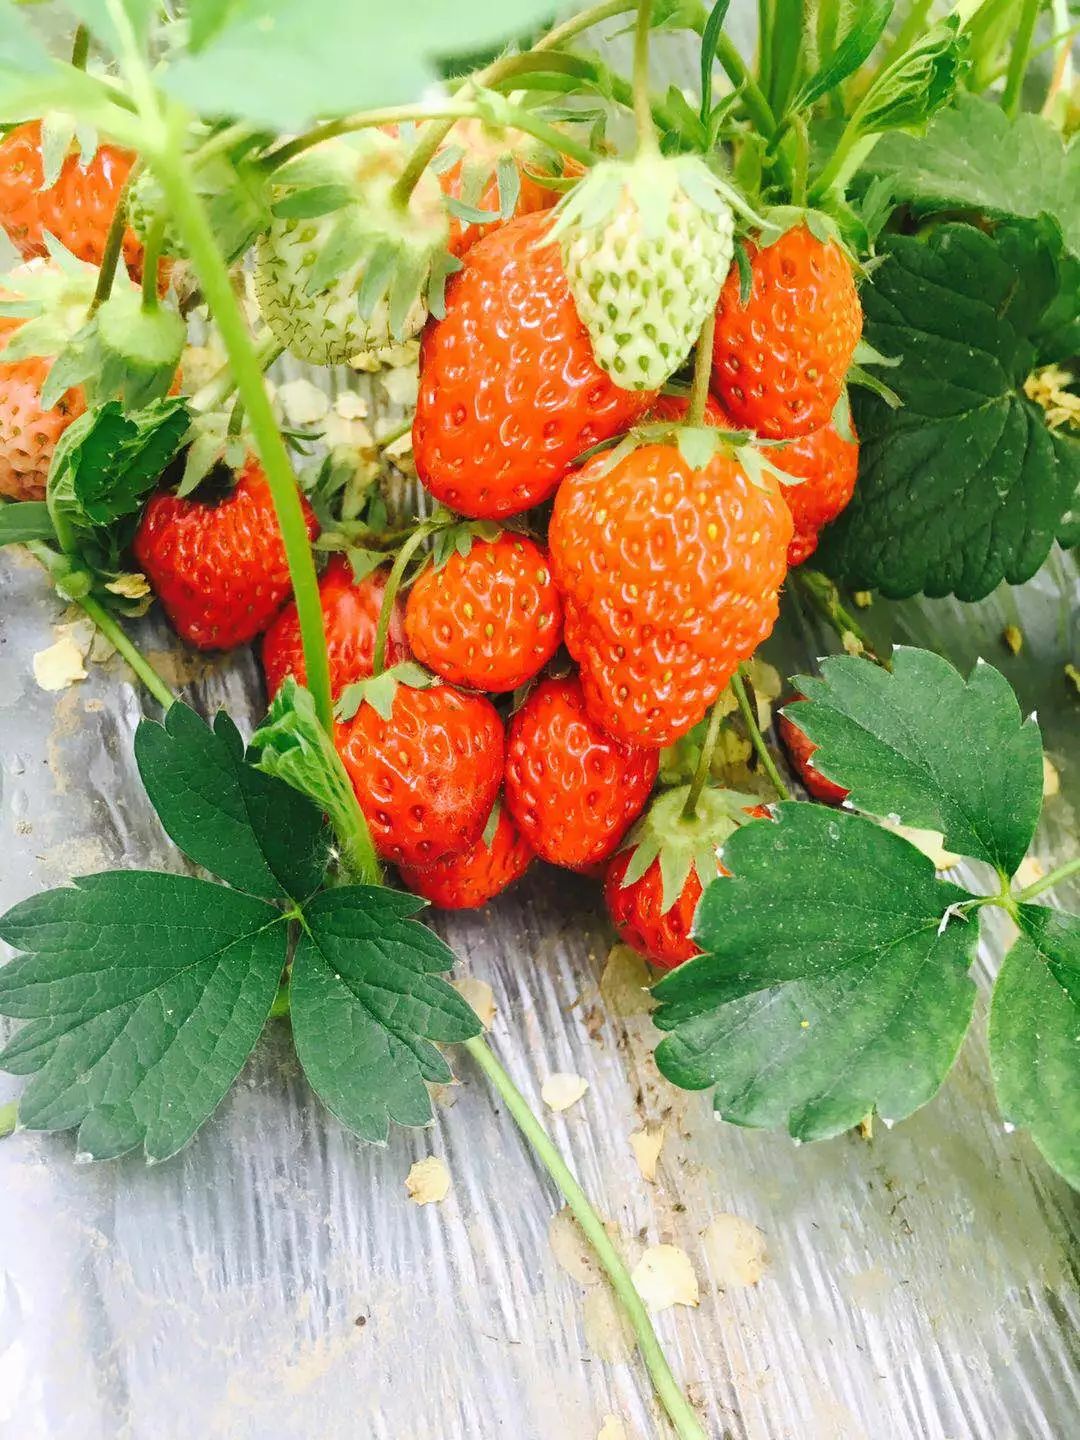 5月吃草莓请注意，这3种要少吃，农残高，激素多，健康问题别忽视 - 知乎